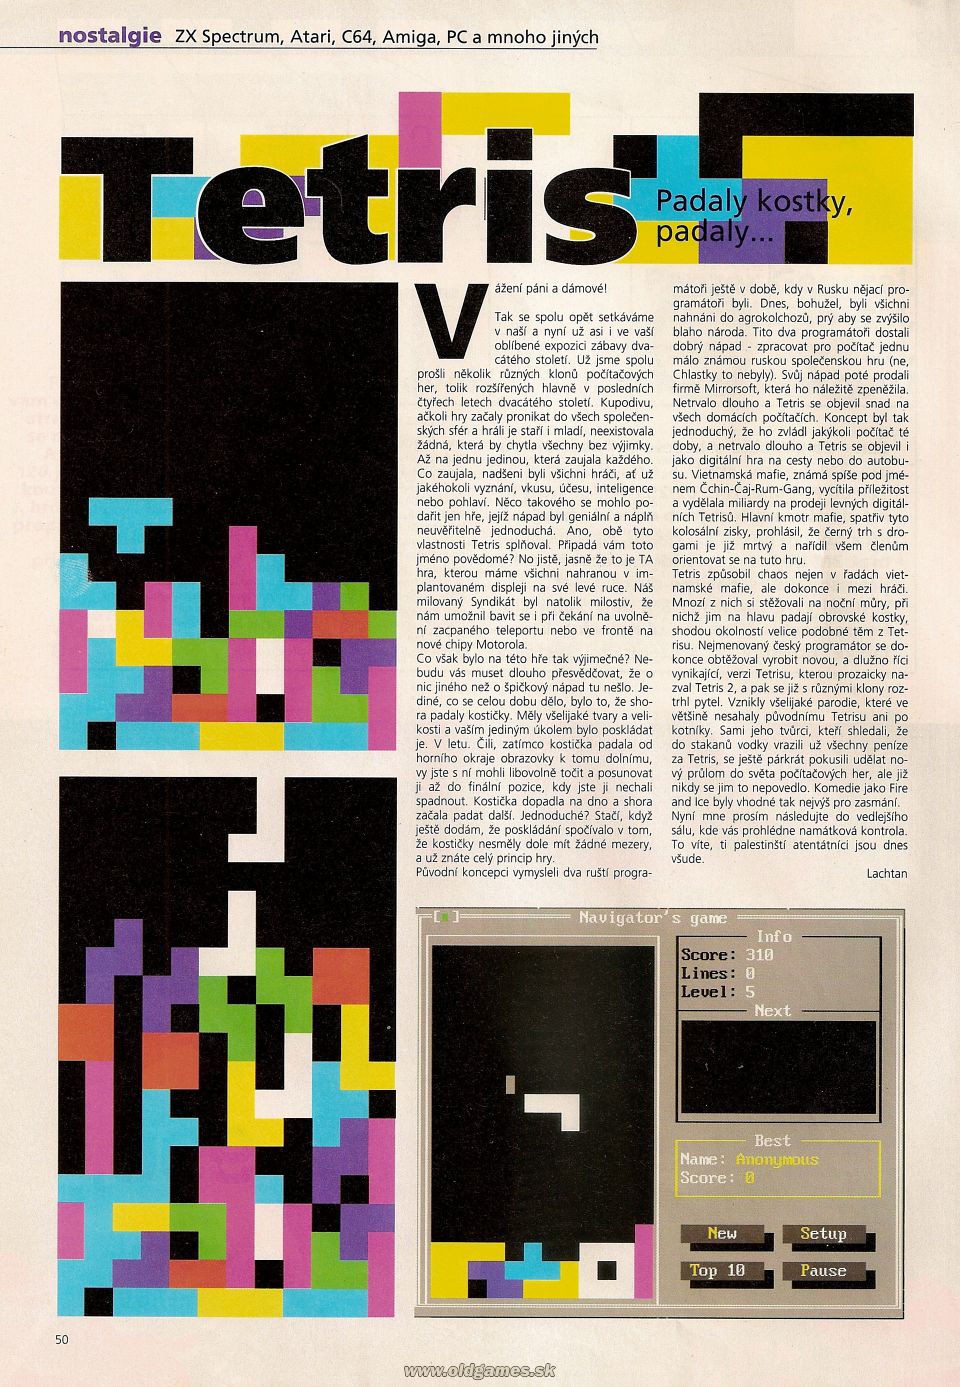 Nostalgie: Tetris